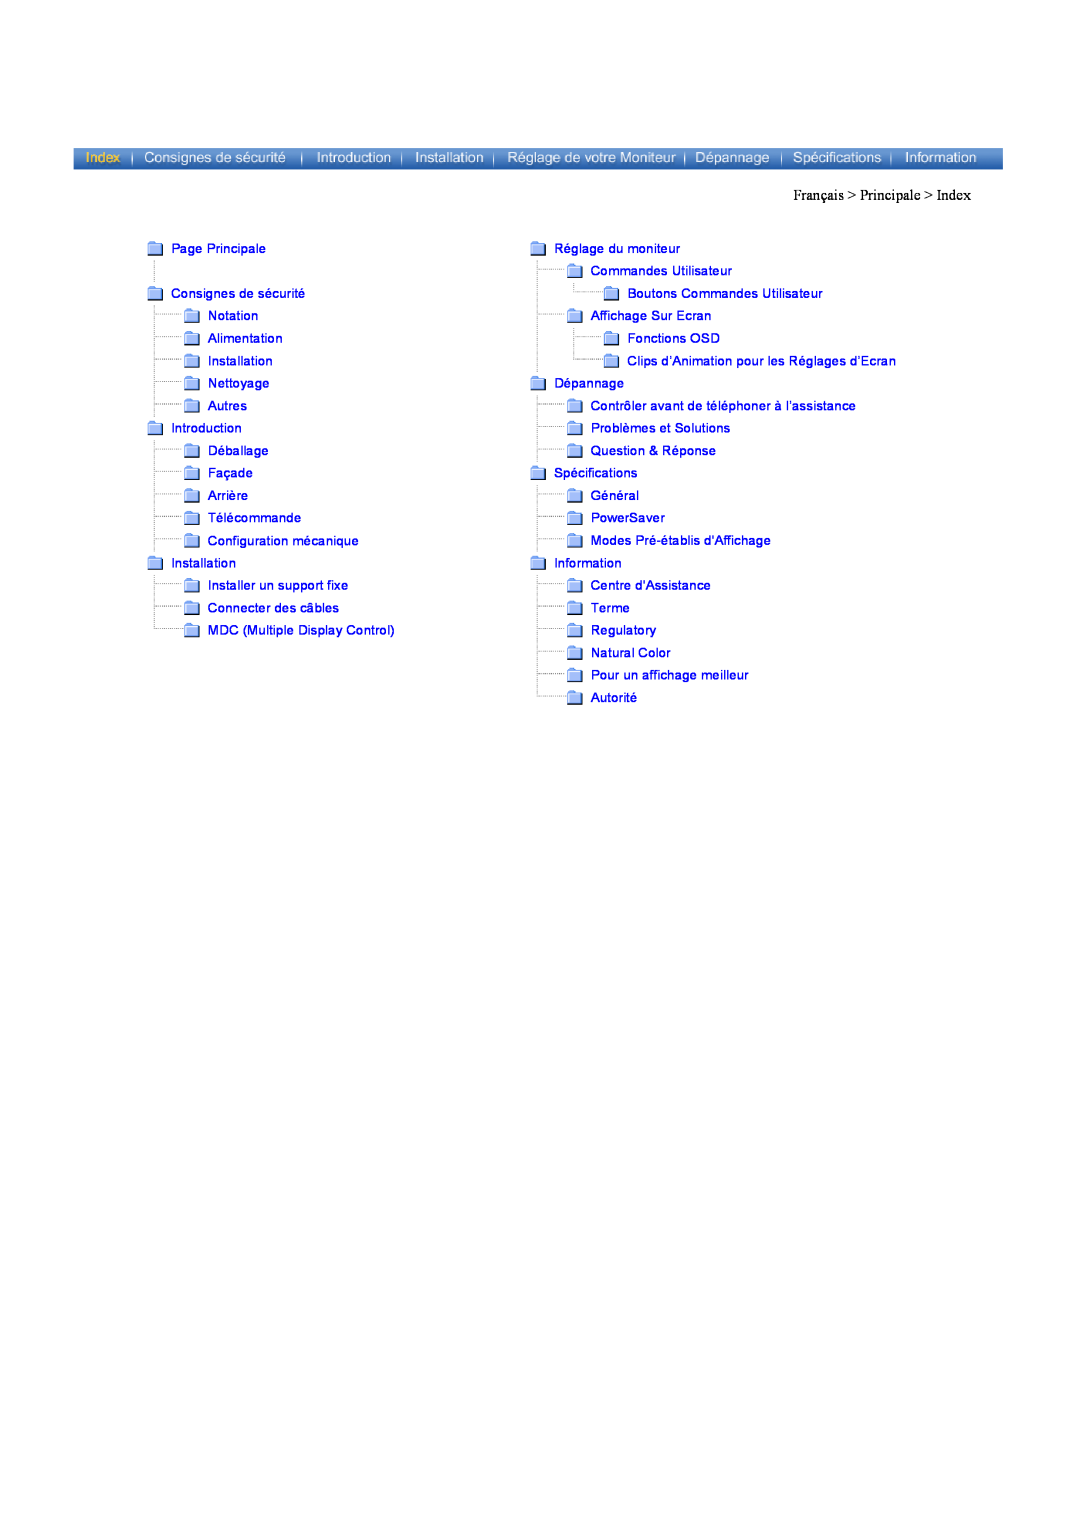 Samsung CK40PSNBF/EDC Français Principale Index, Page Principale, Réglage du moniteur, Commandes Utilisateur, Notation 